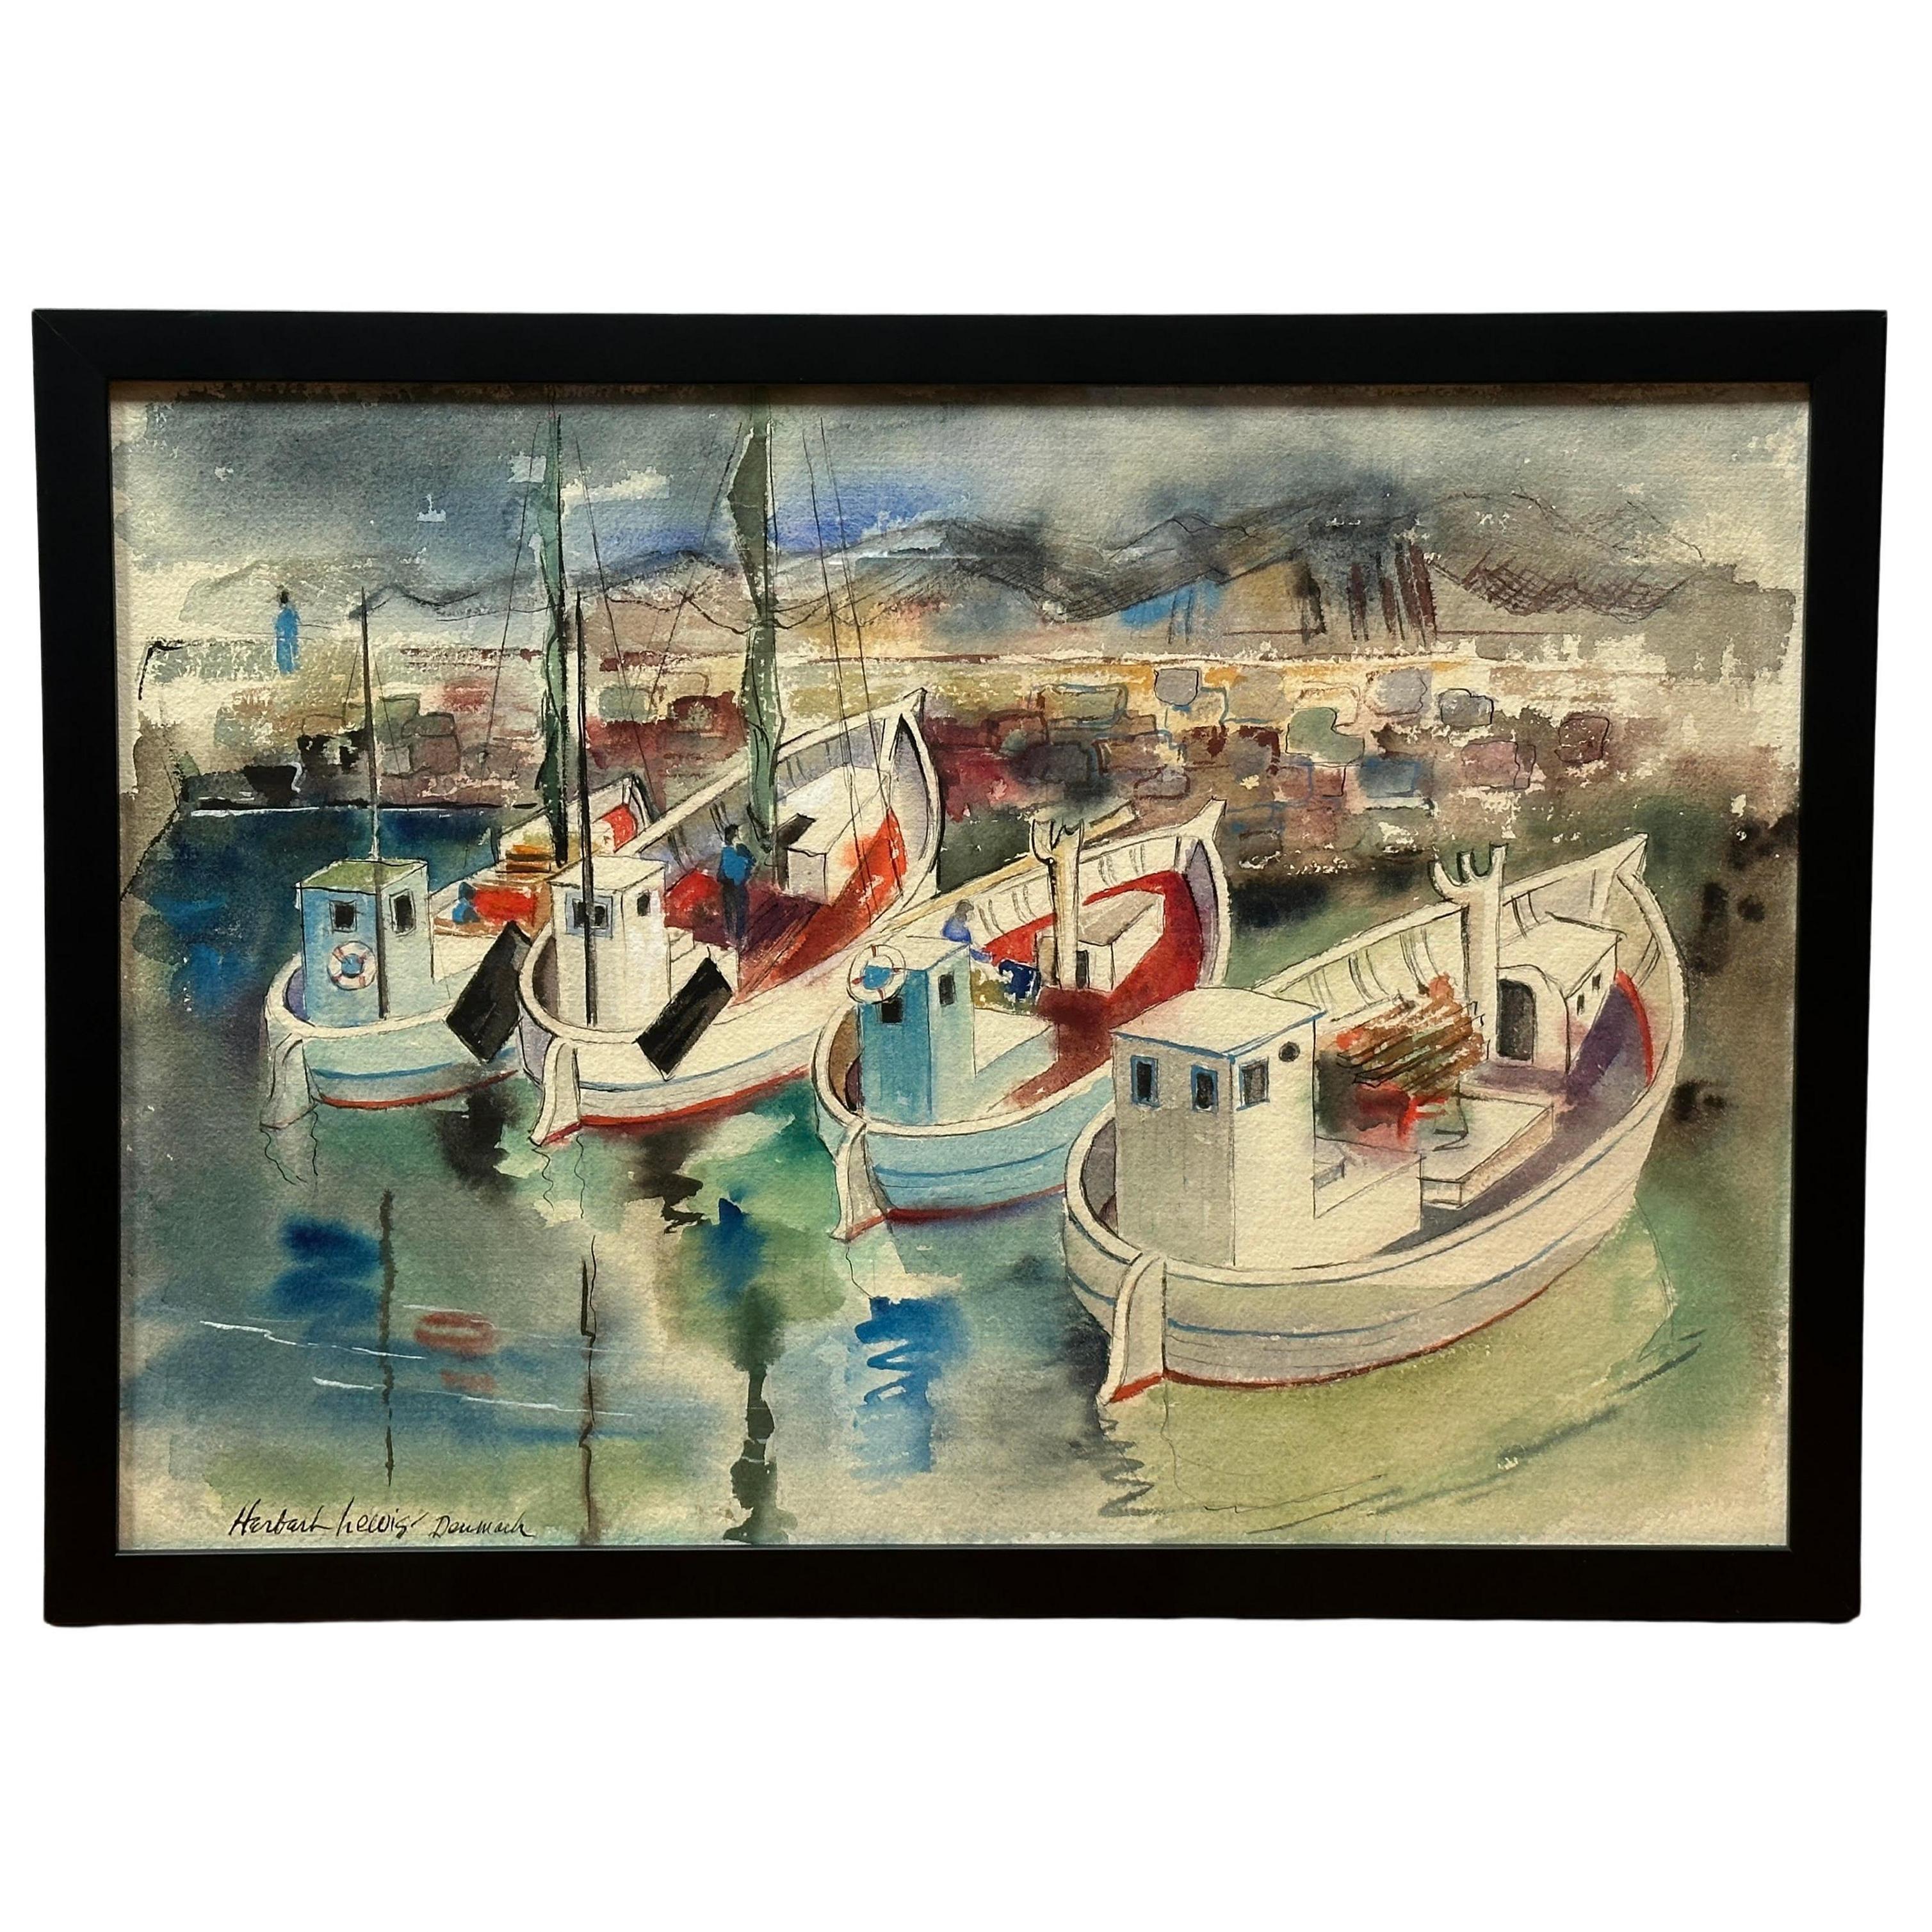 "Dänemark" ist ein Aquarell von Herbert Lewins, das die ruhige Schönheit eines dänischen Hafens einfängt und vier charmante Boote zeigt, die traditionellen Fischerbooten ähneln. Durch den gekonnten Einsatz sanfter Farbtöne, die durch rote Akzente